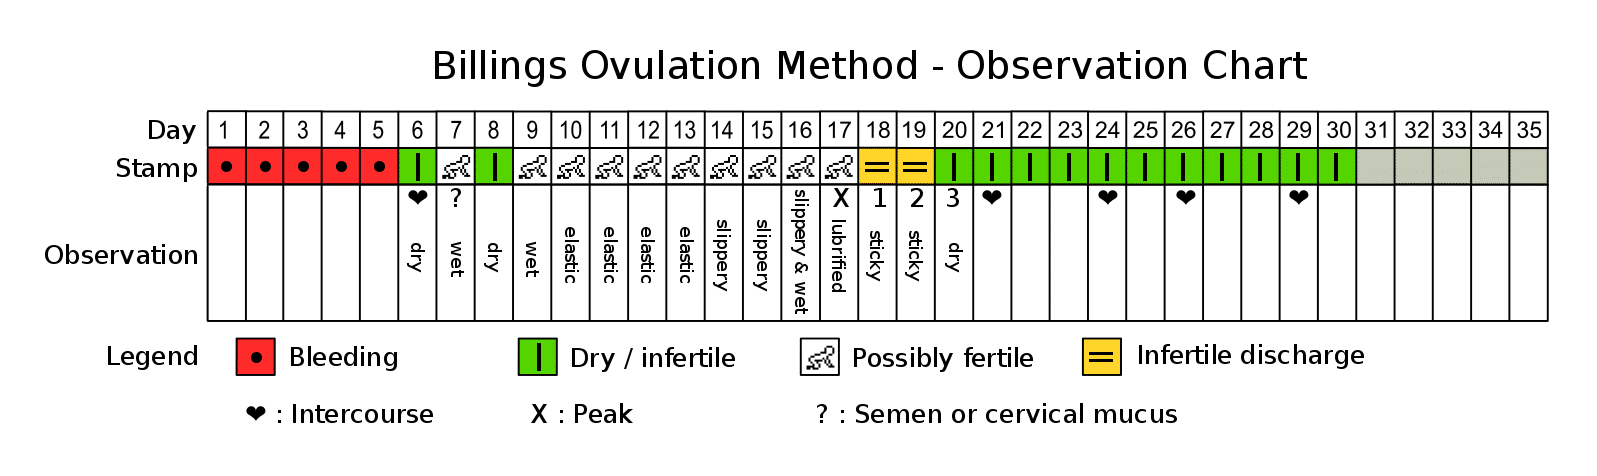 sample billings ovulation method (or nfp) observation chart